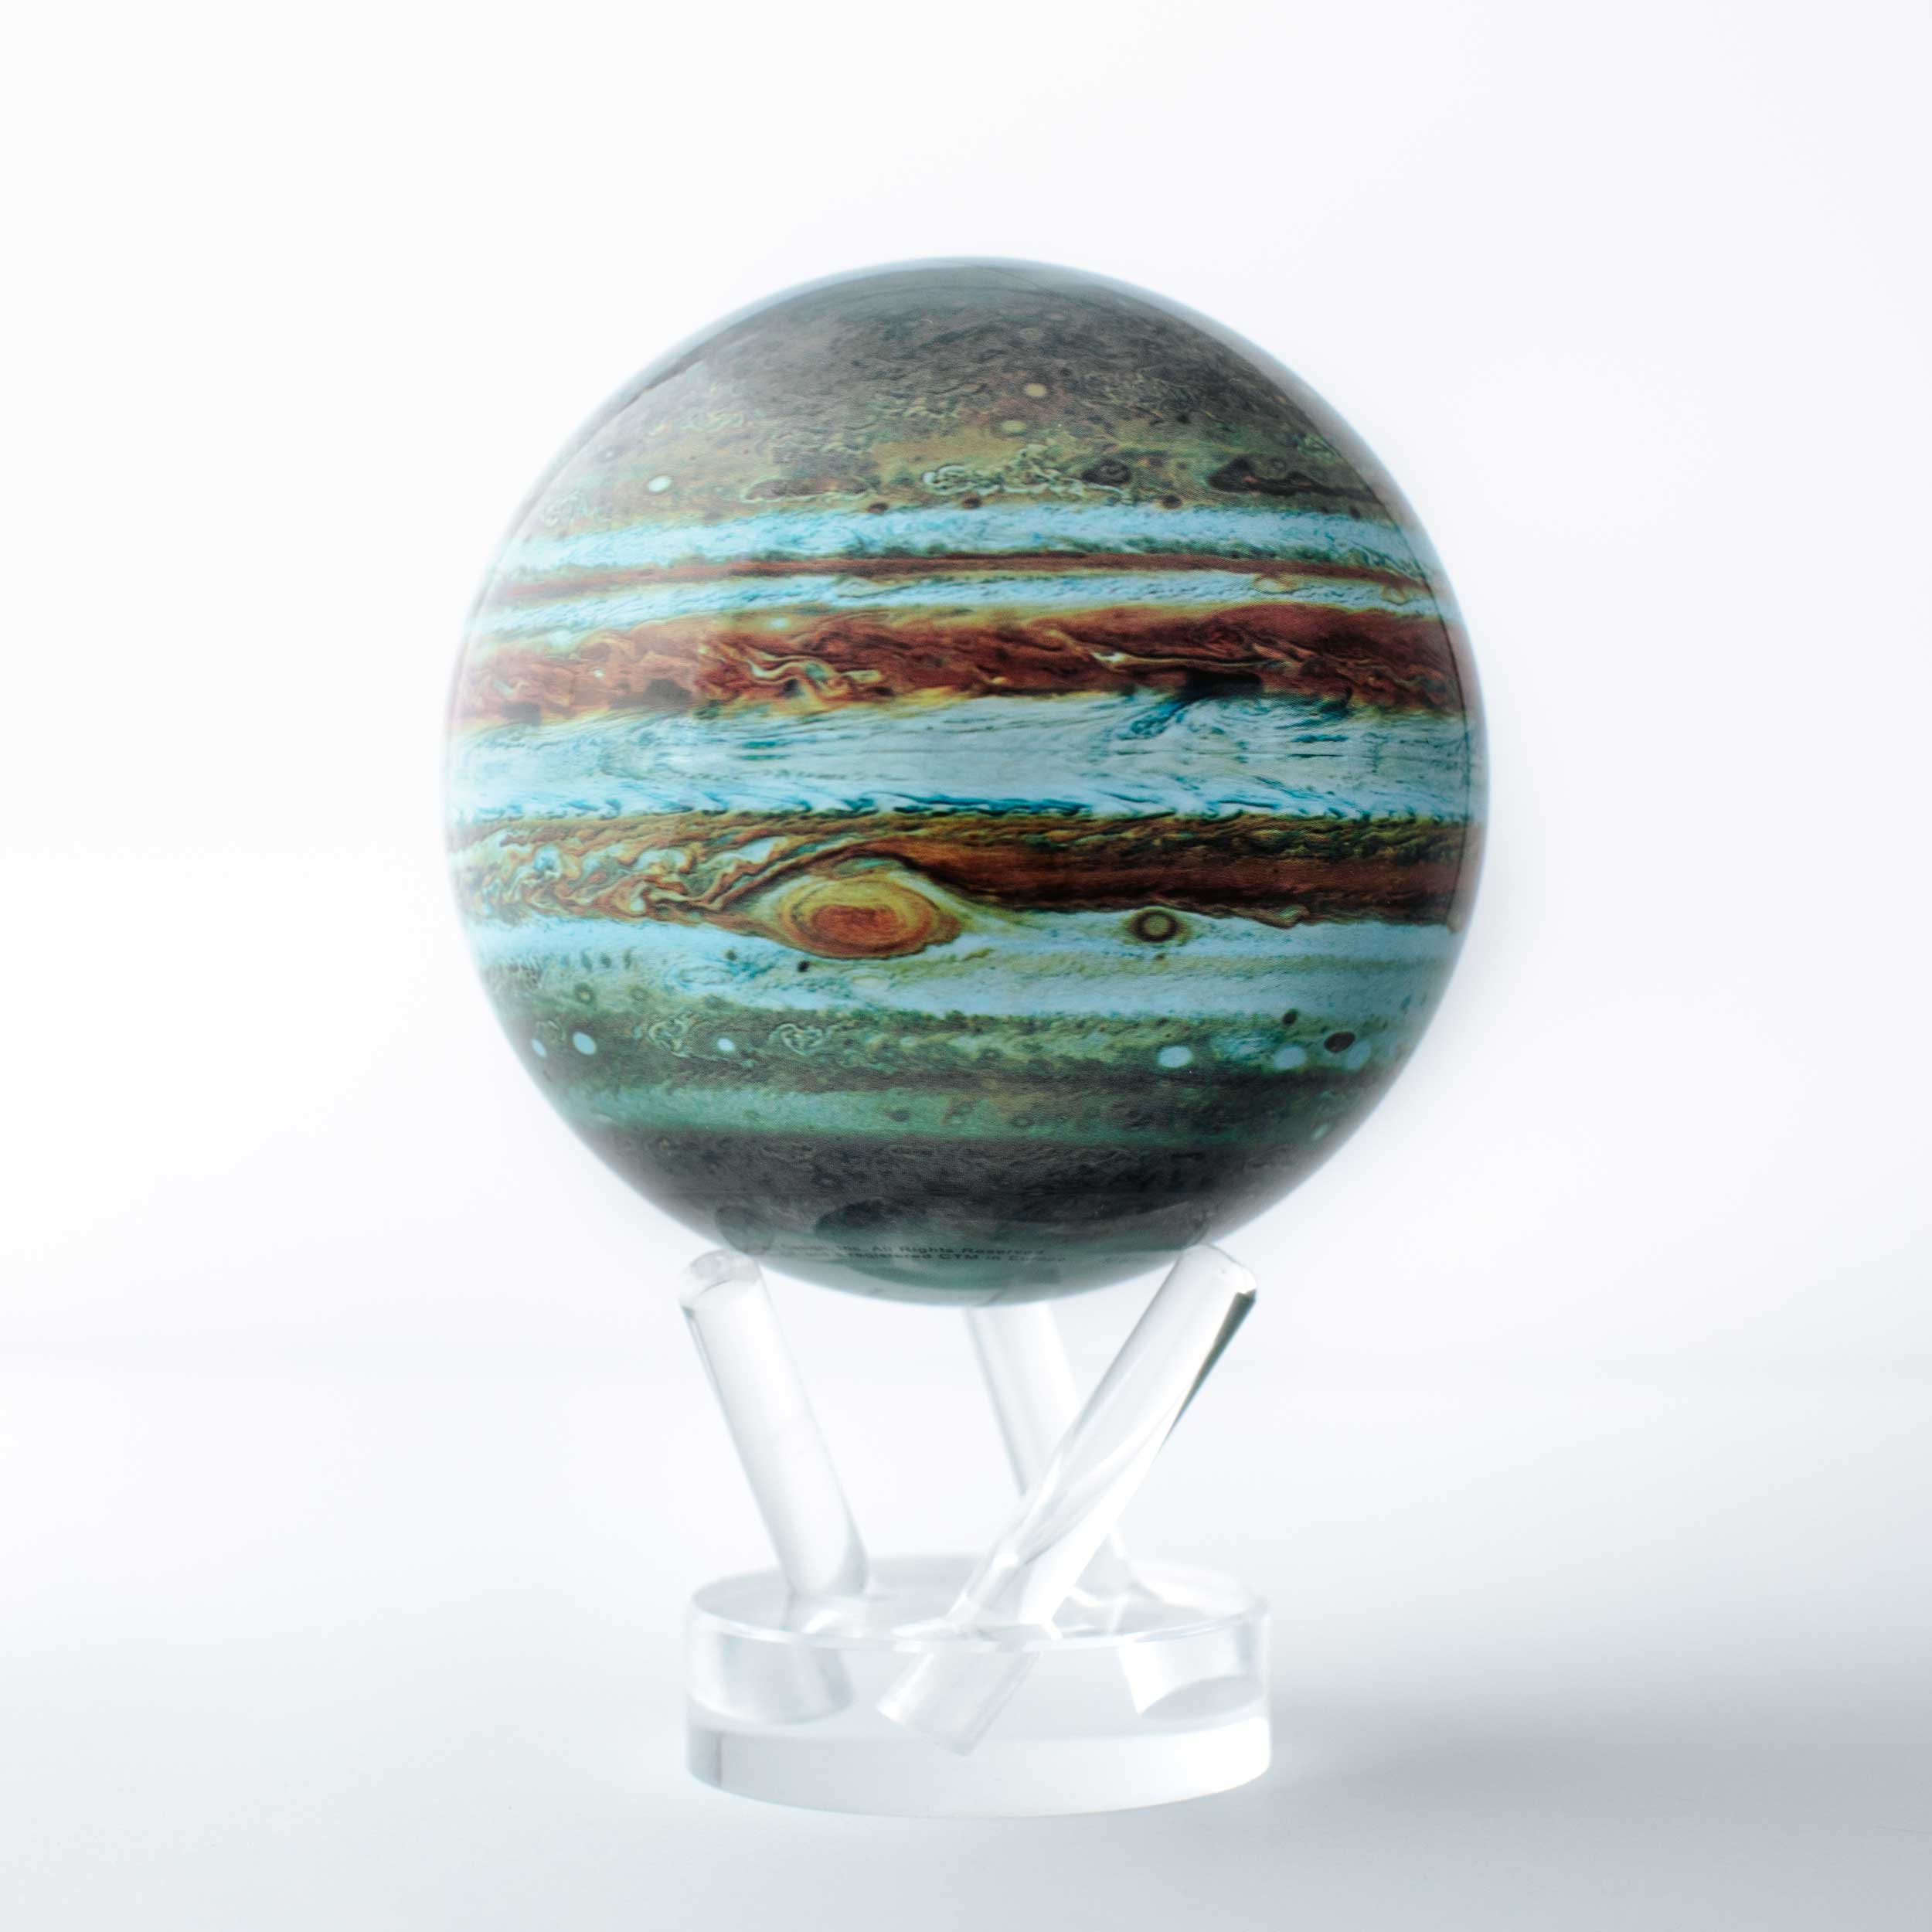 Mova_Spinning_Globe_4.5"_Jupiter